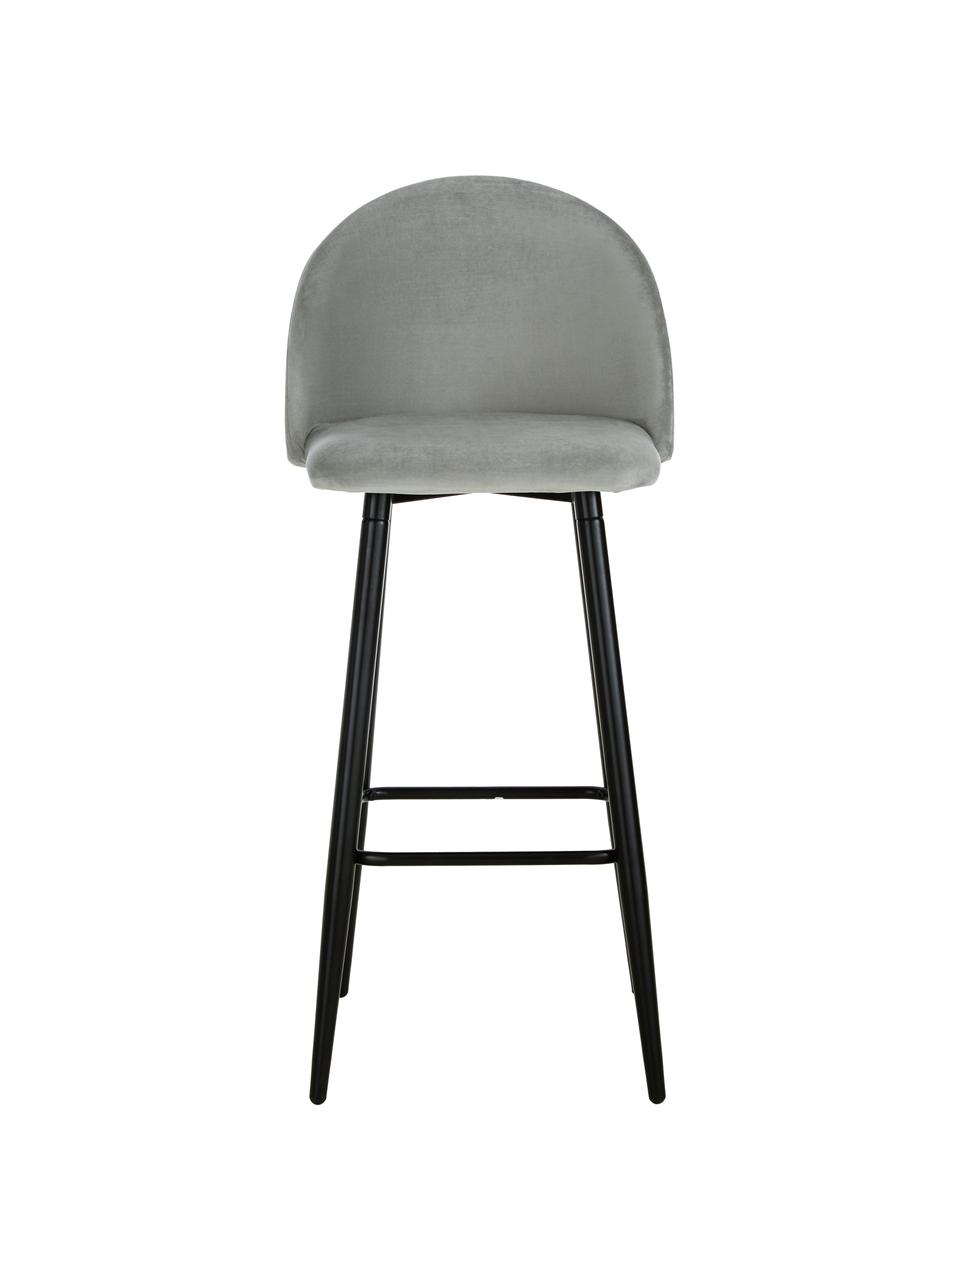 Krzesło barowe z aksamitu Amy, Tapicerka: aksamit (poliester) Tkani, Nogi: metal malowany proszkowo, Aksamitny szary, S 45 x W 103 cm